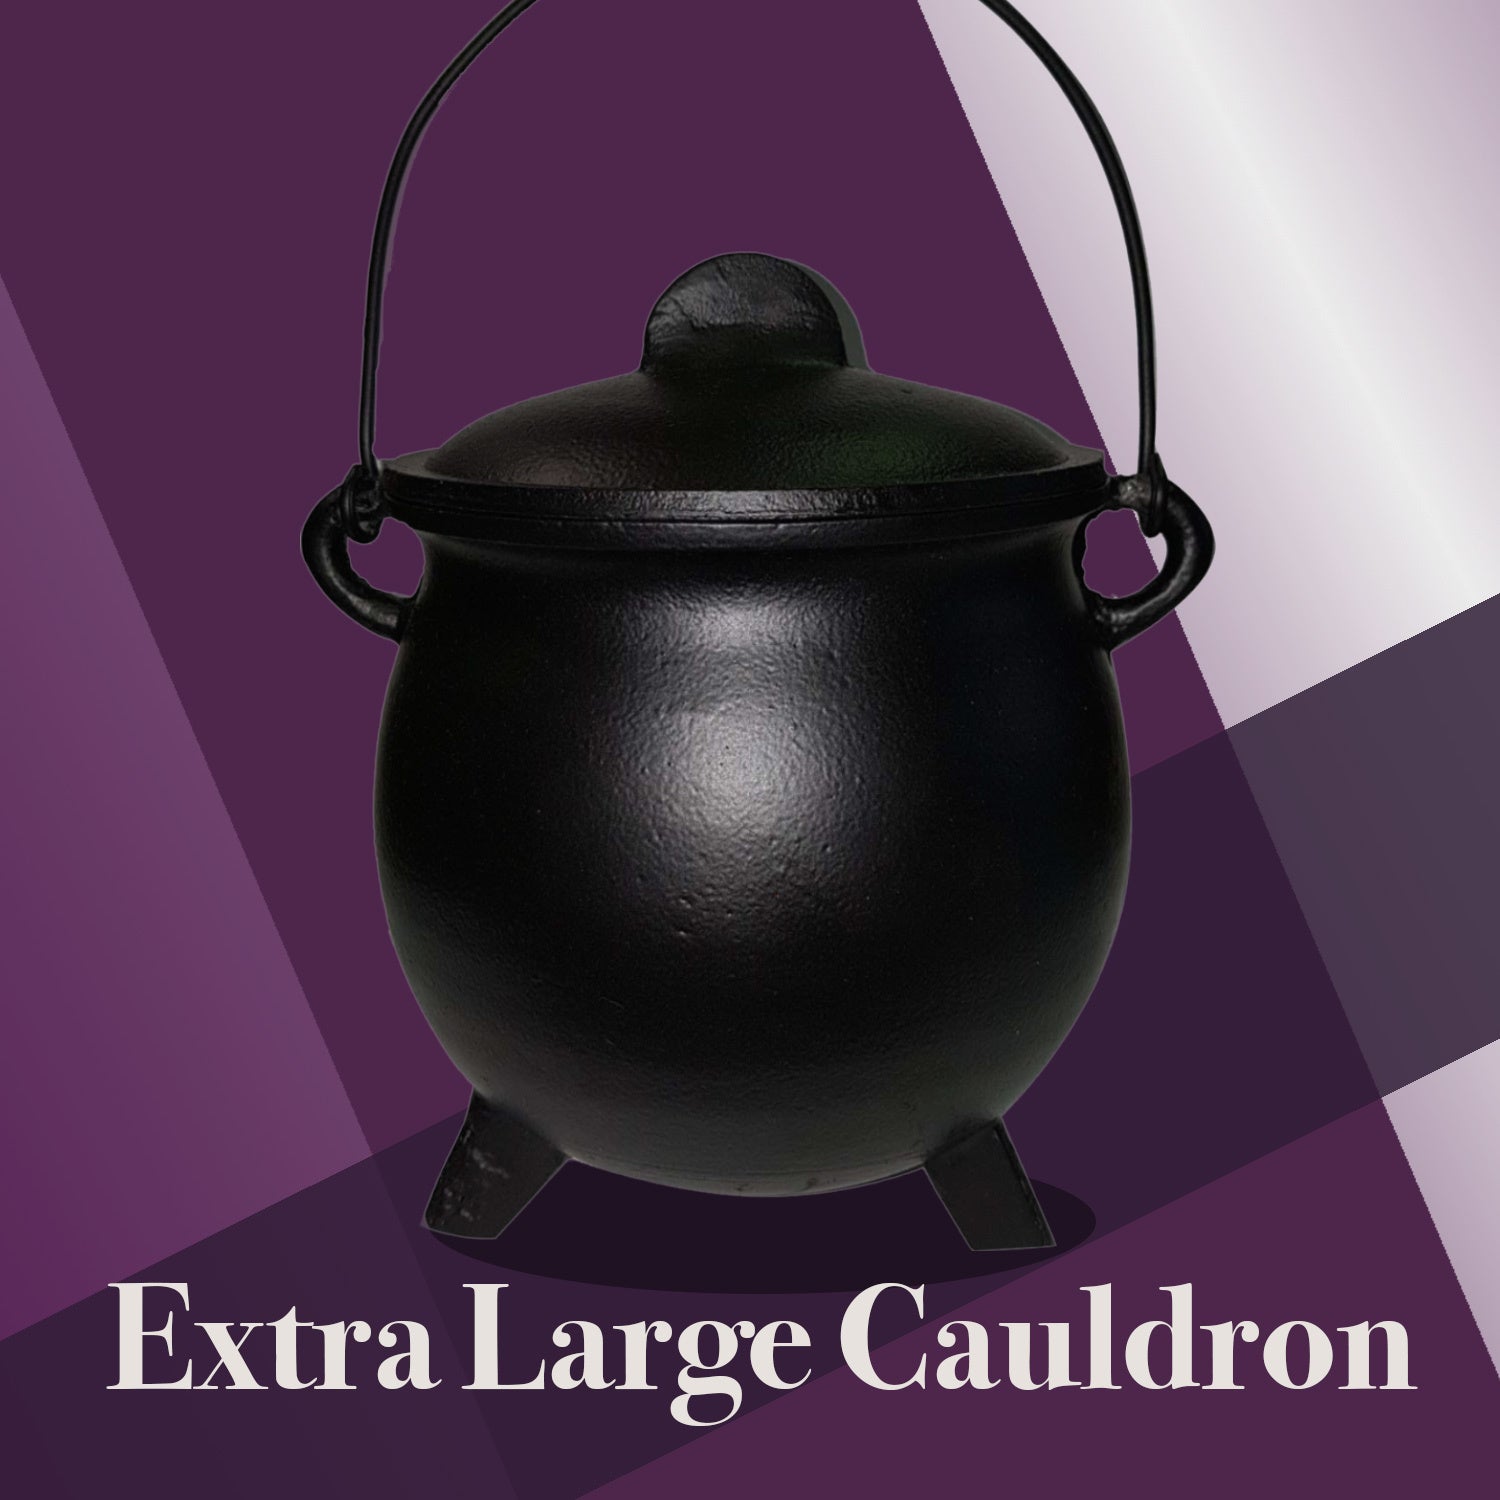 Extra Large Cast Iron Cauldron - The Spirit of Life